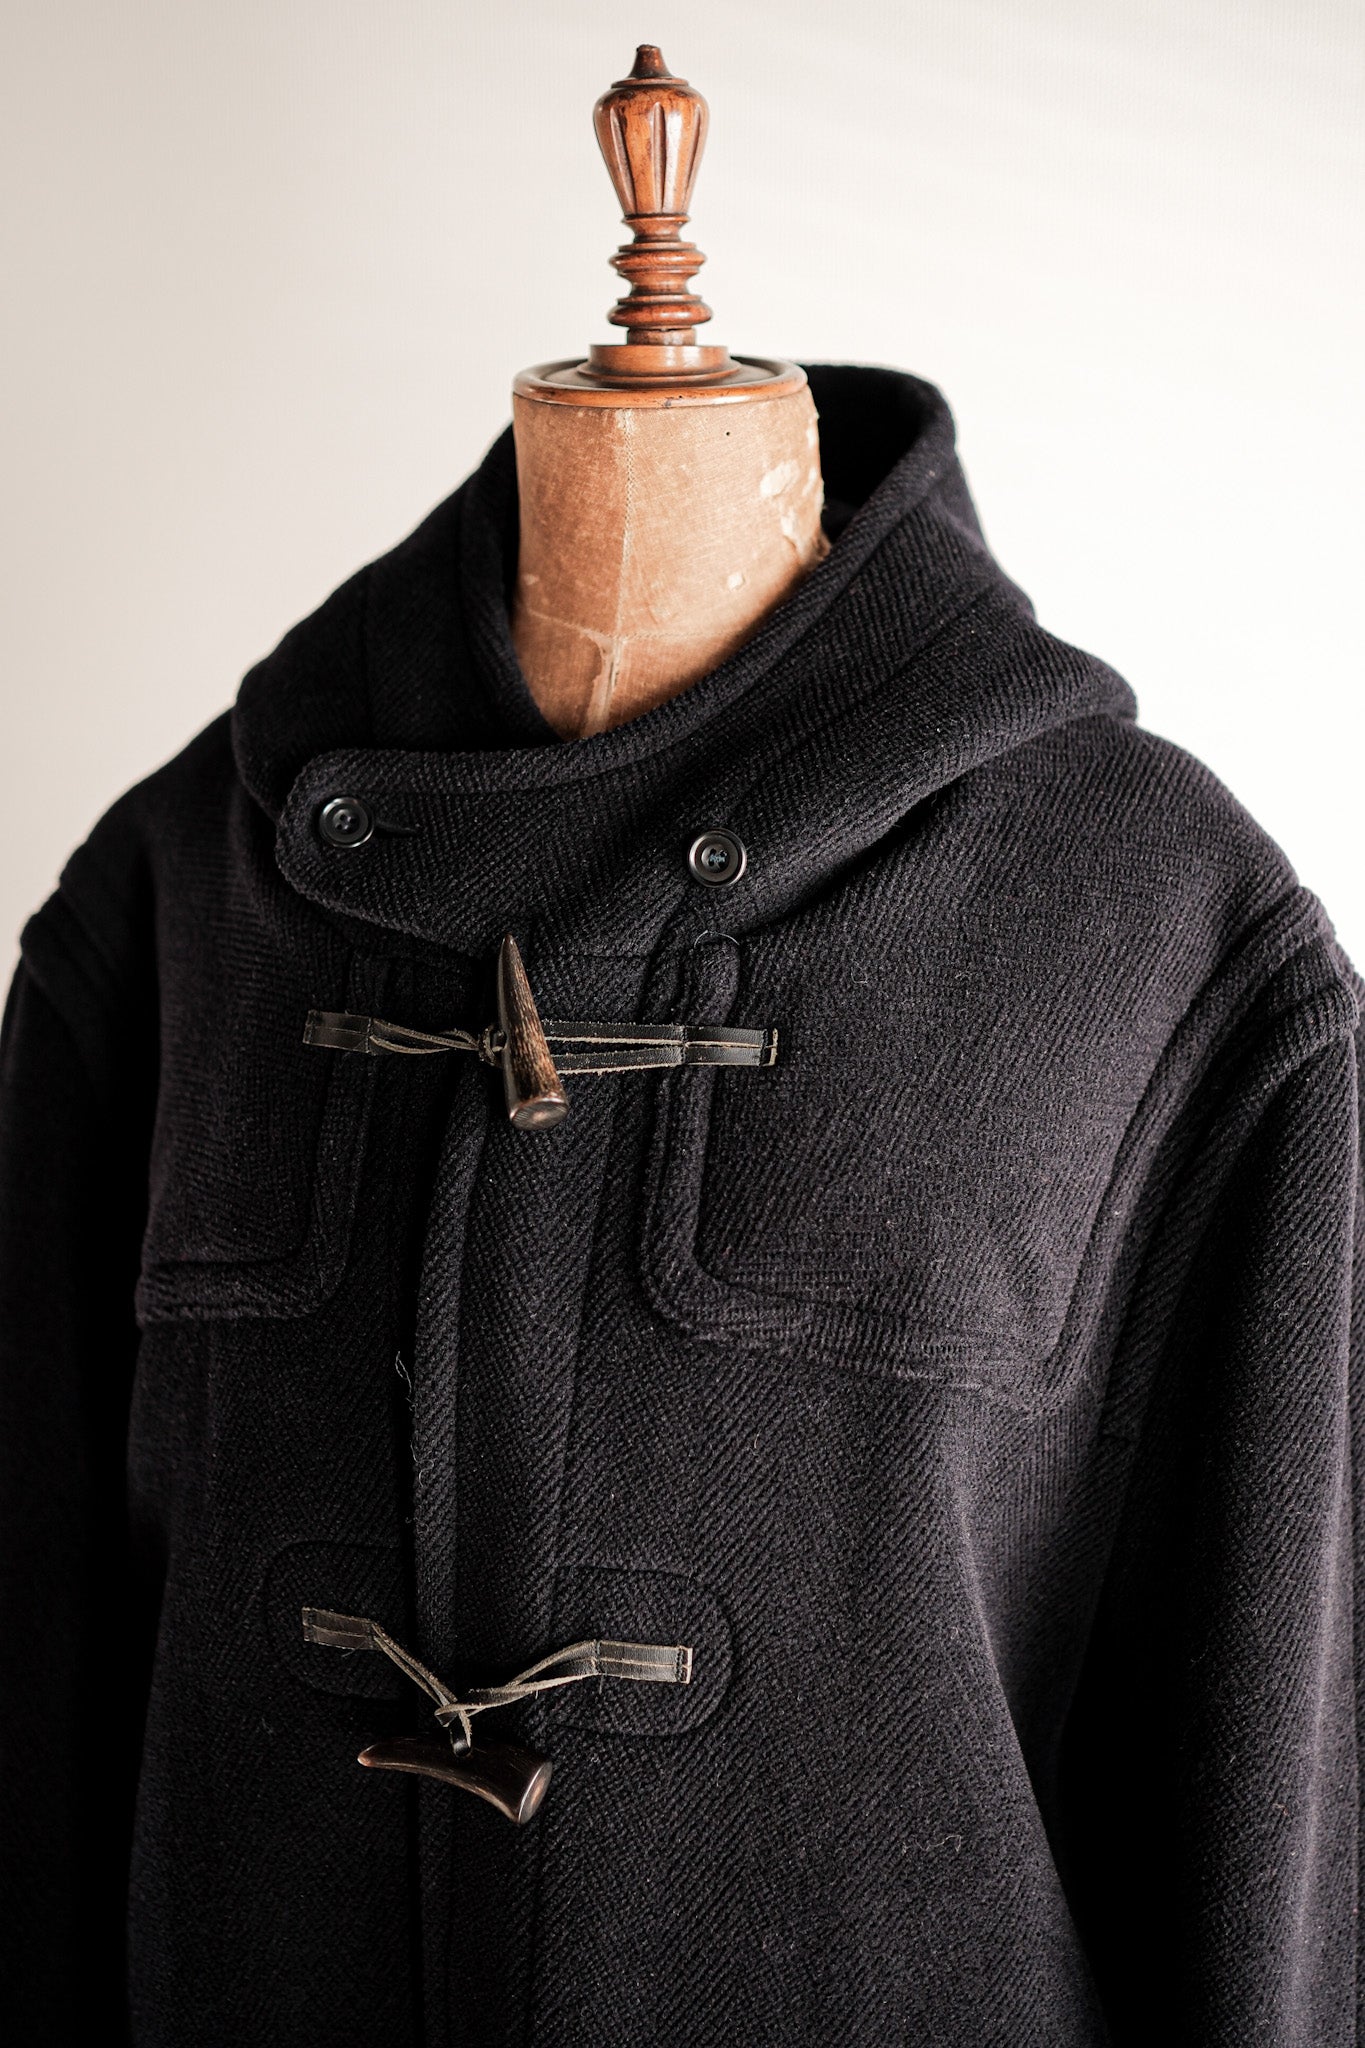 [~ 90 년대] Old England Paris Wool Duffle Coat "Moorbrook"